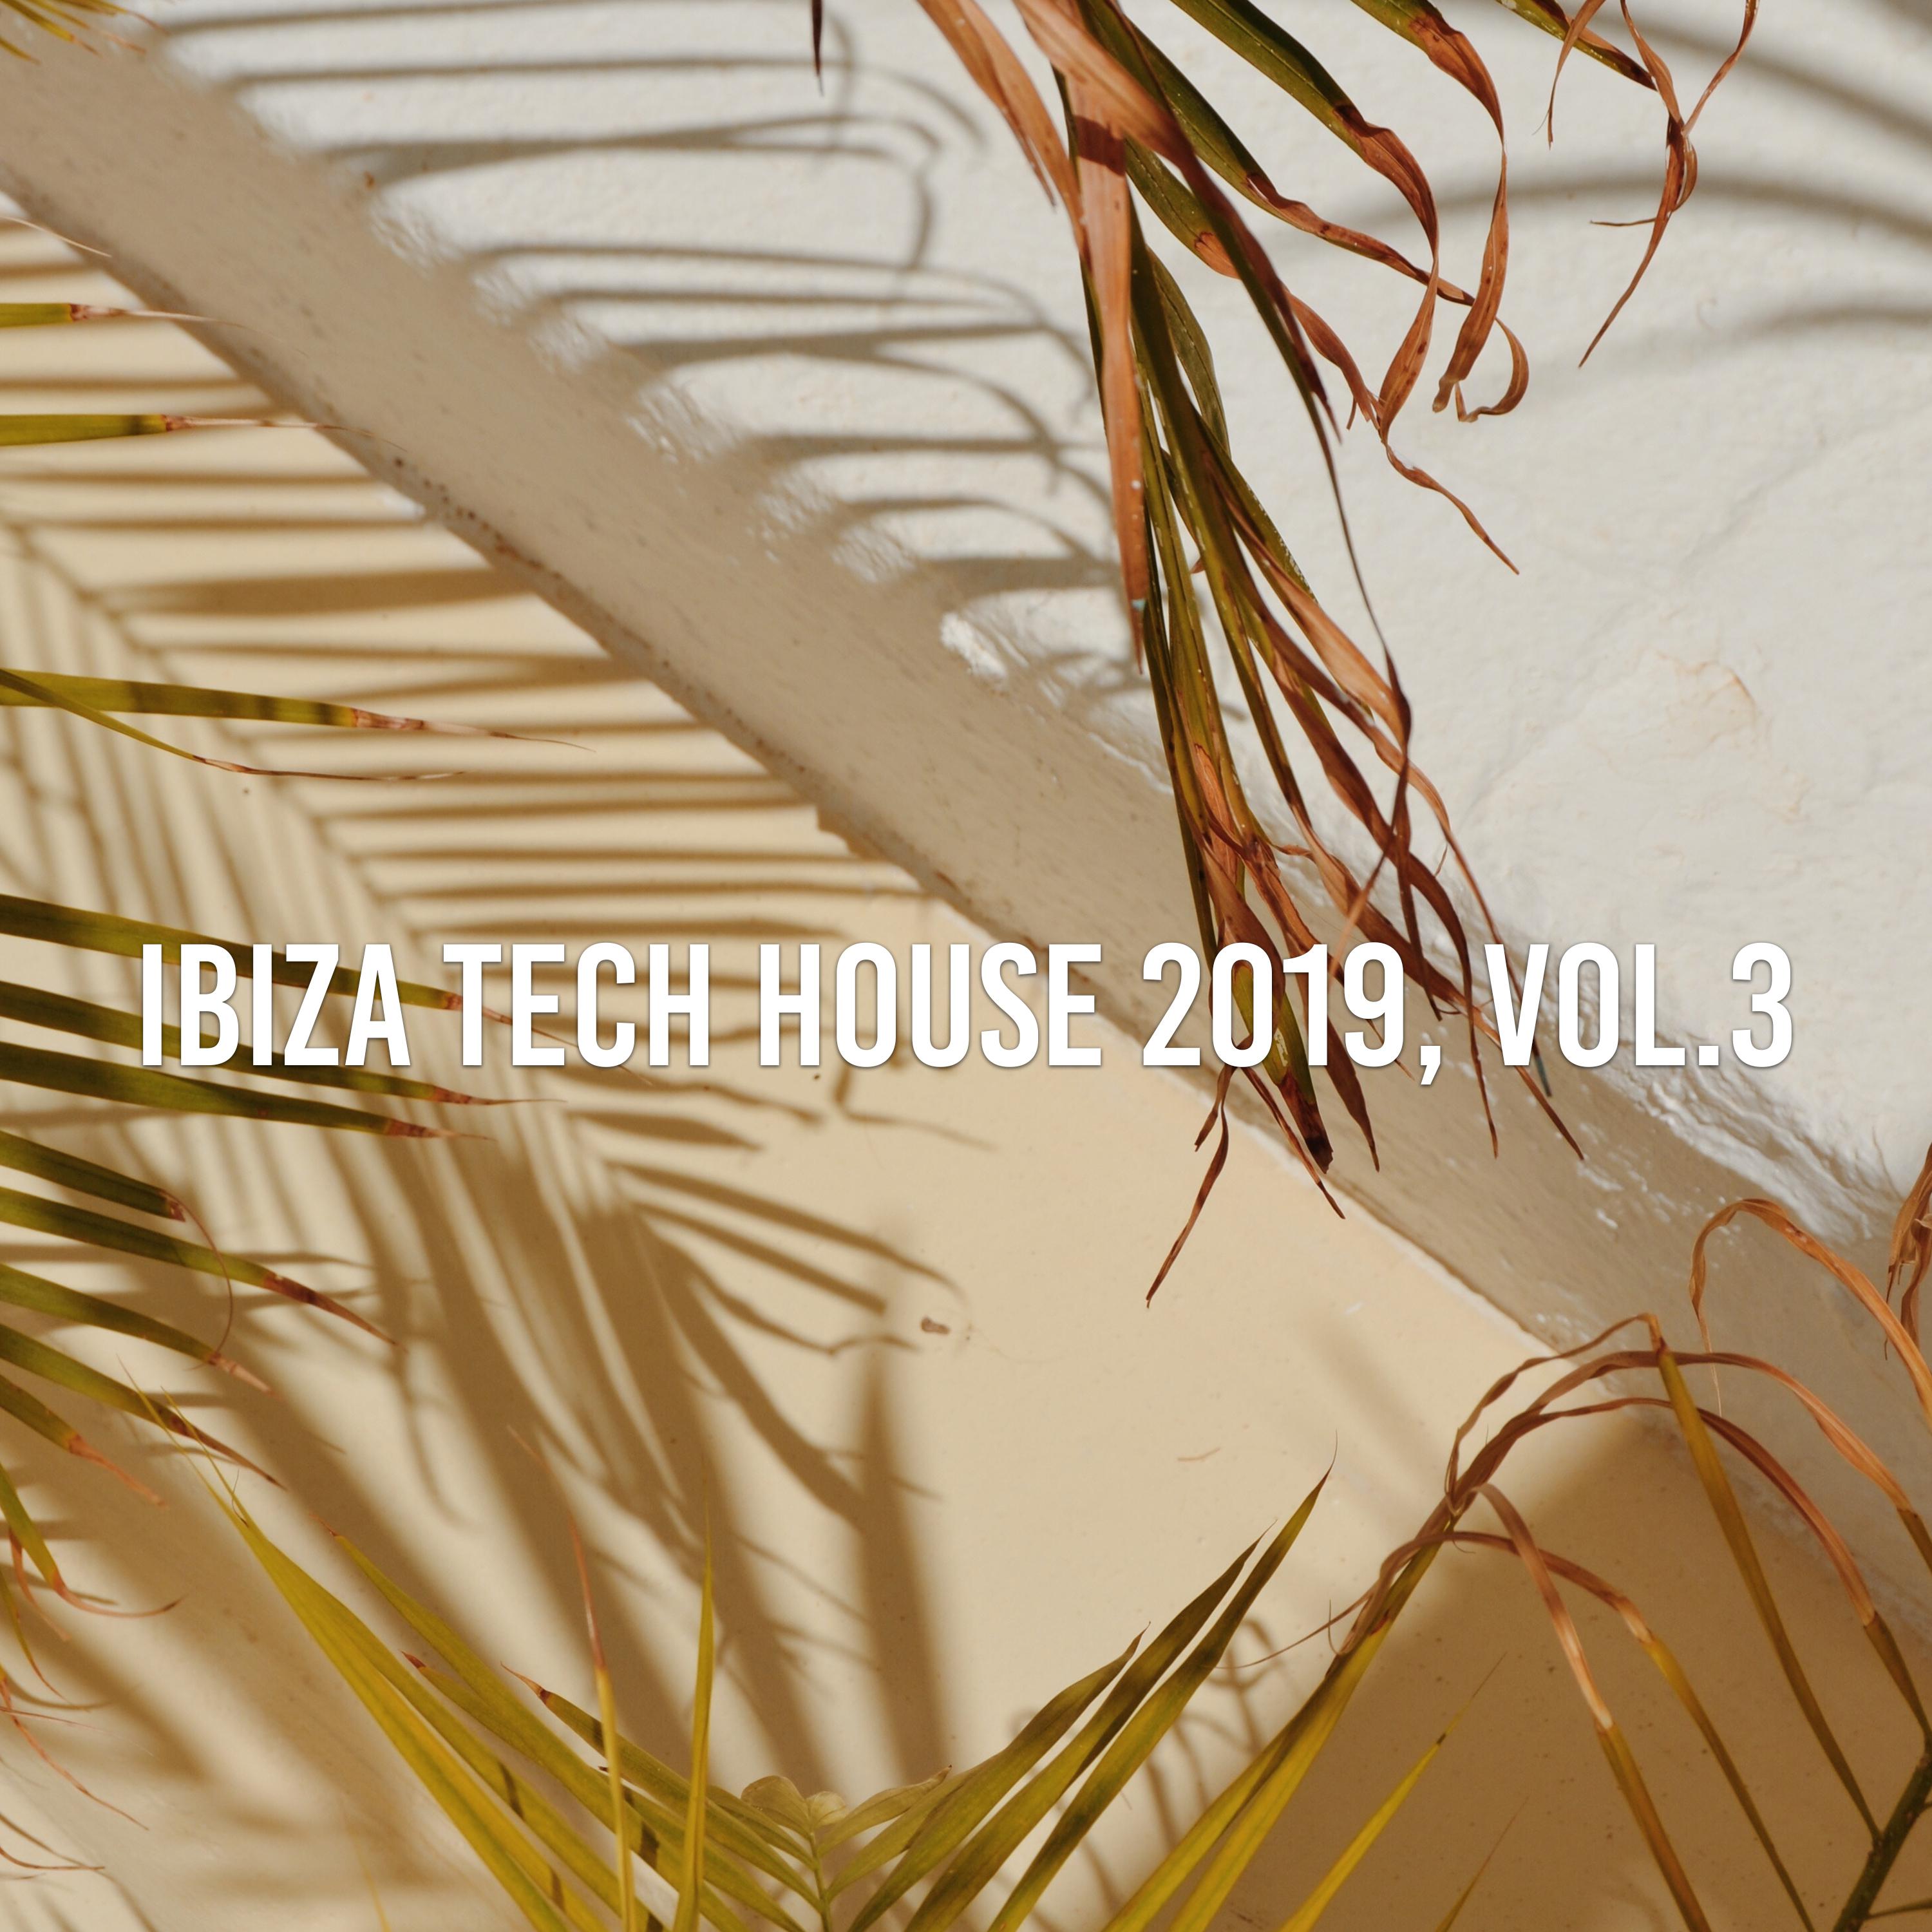 Ibiza Tech House 2019, Vol. 3